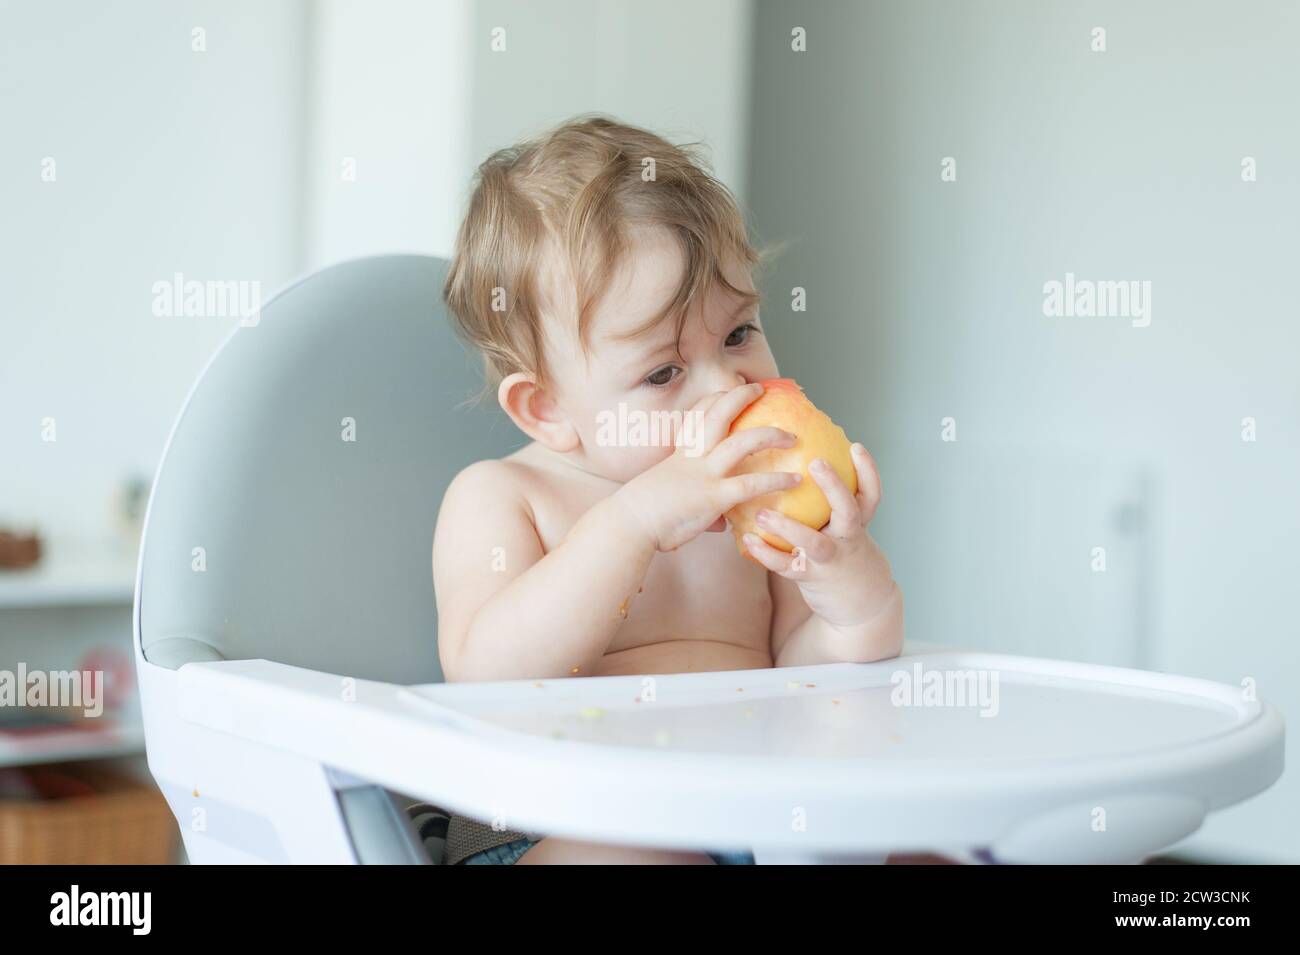 Bébé mangeant une pomme assis sur une chaise haute Banque D'Images